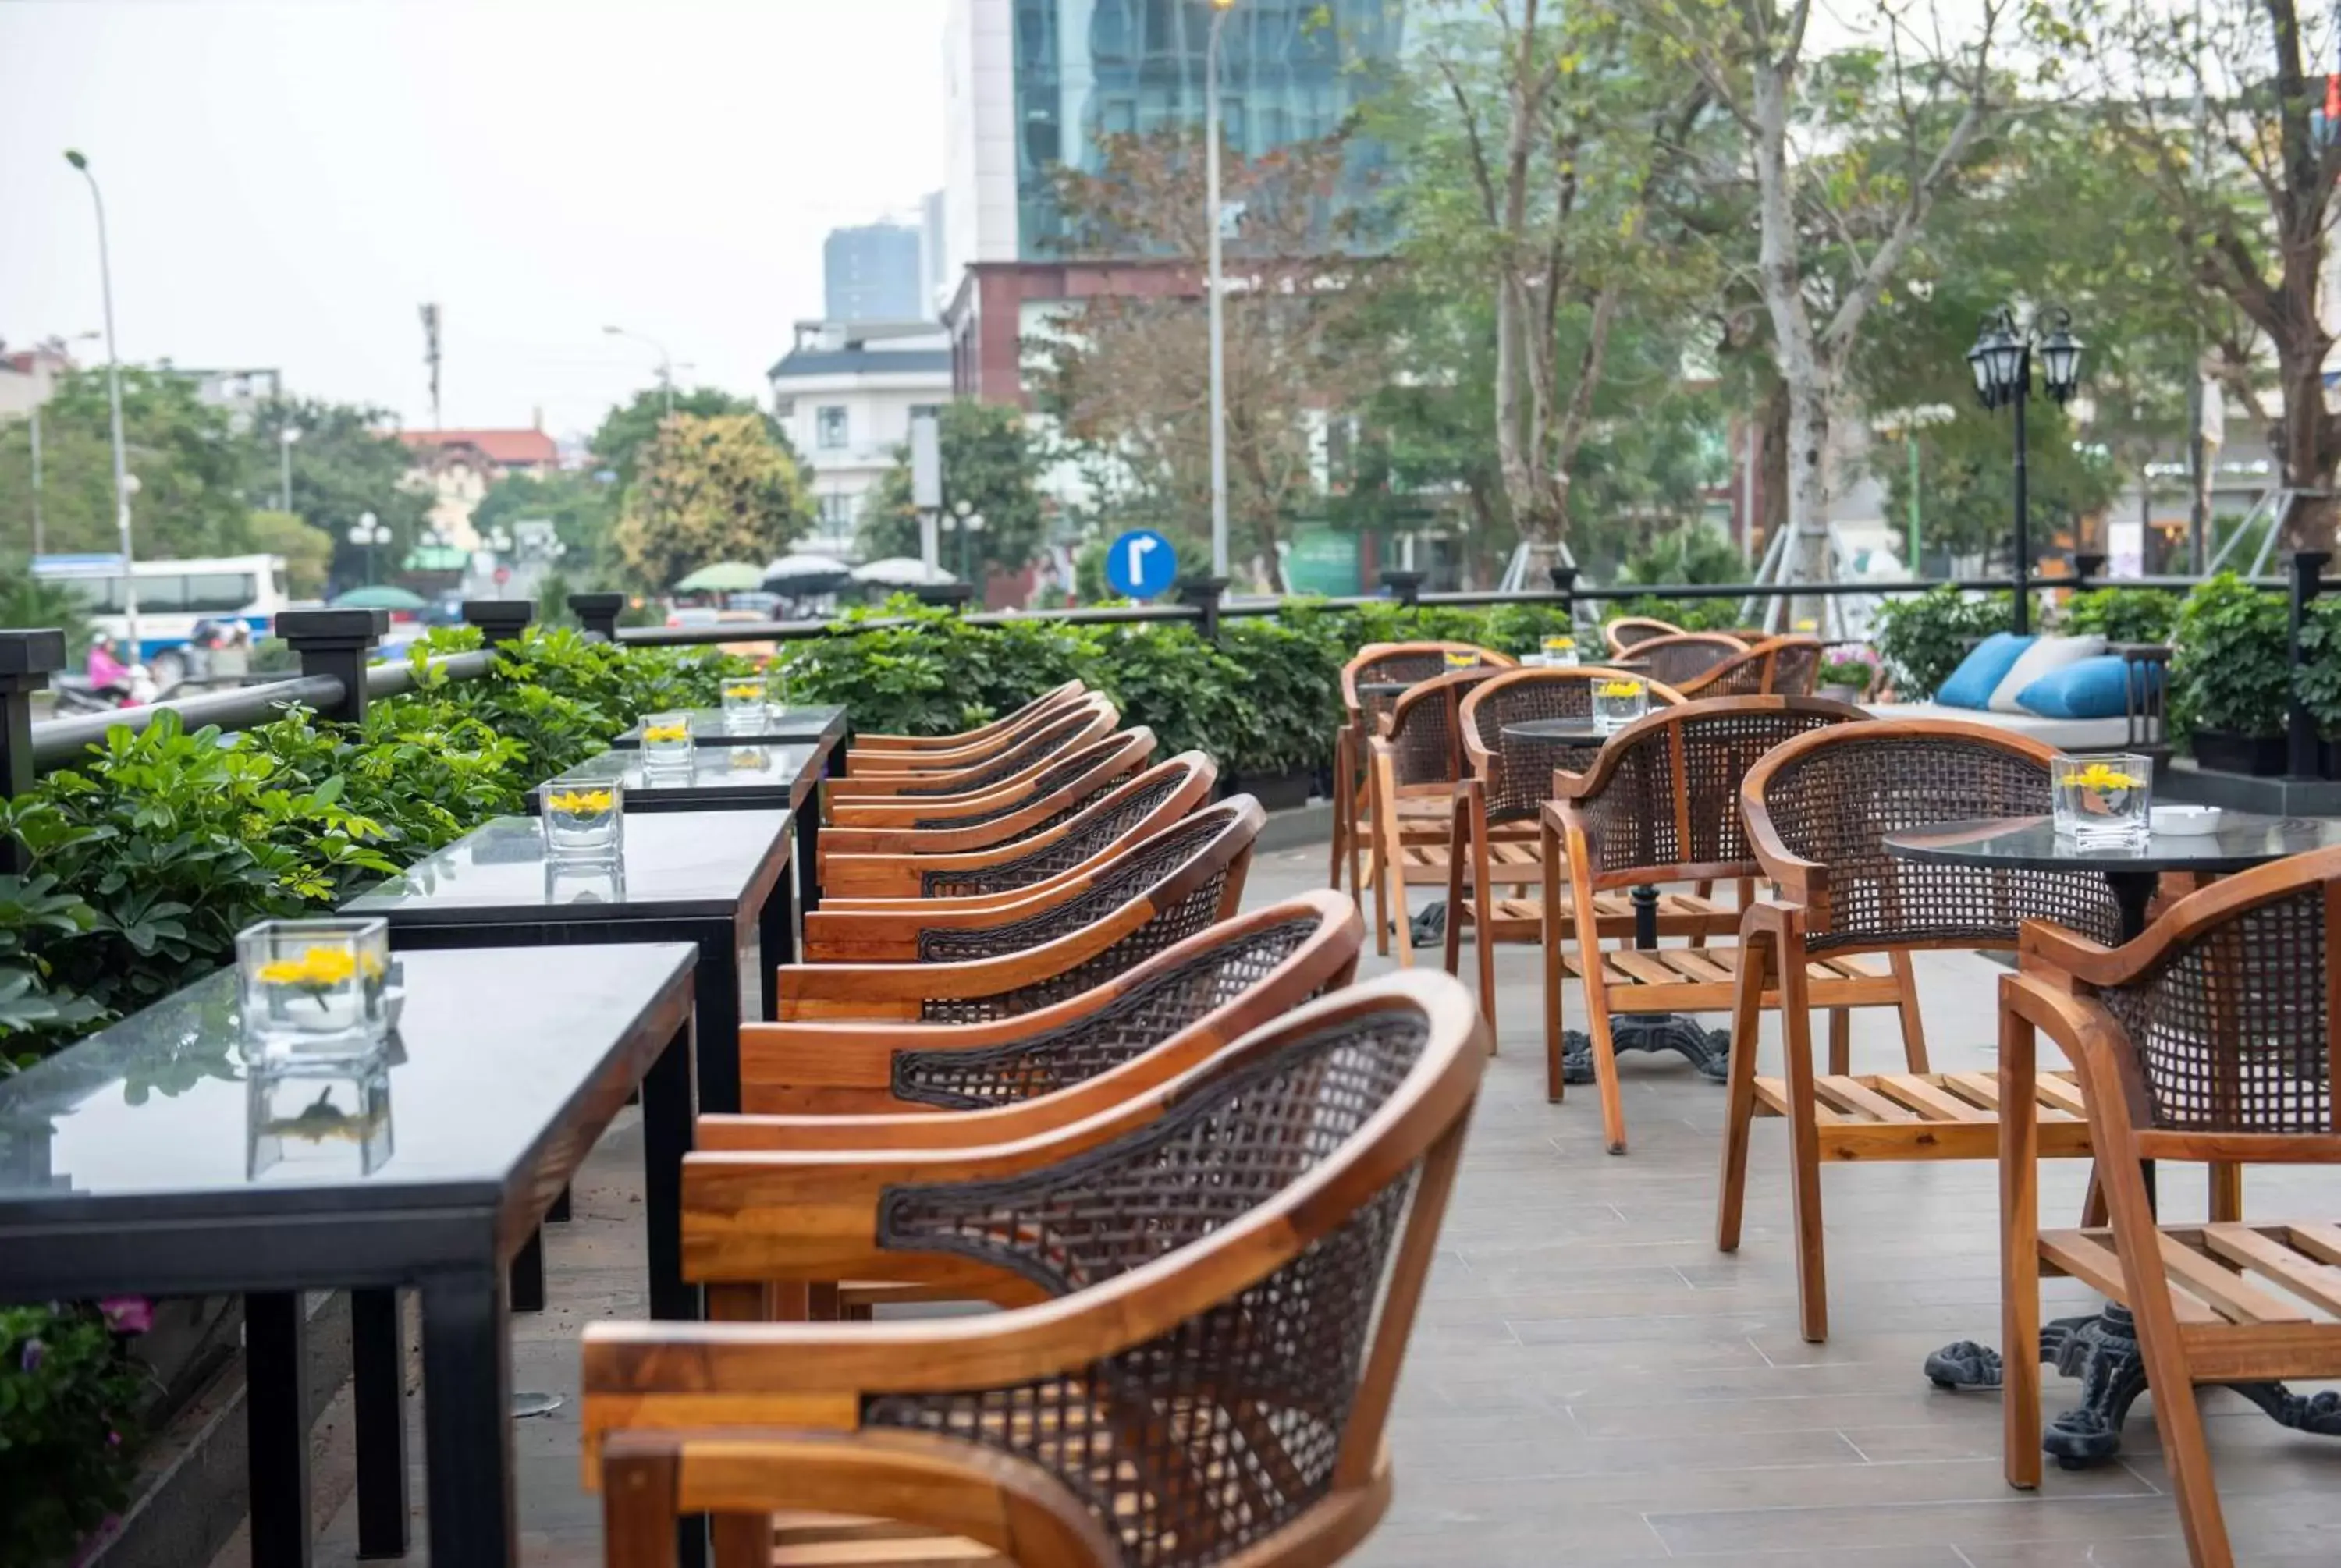 On site, Restaurant/Places to Eat in Wyndham Garden Hanoi